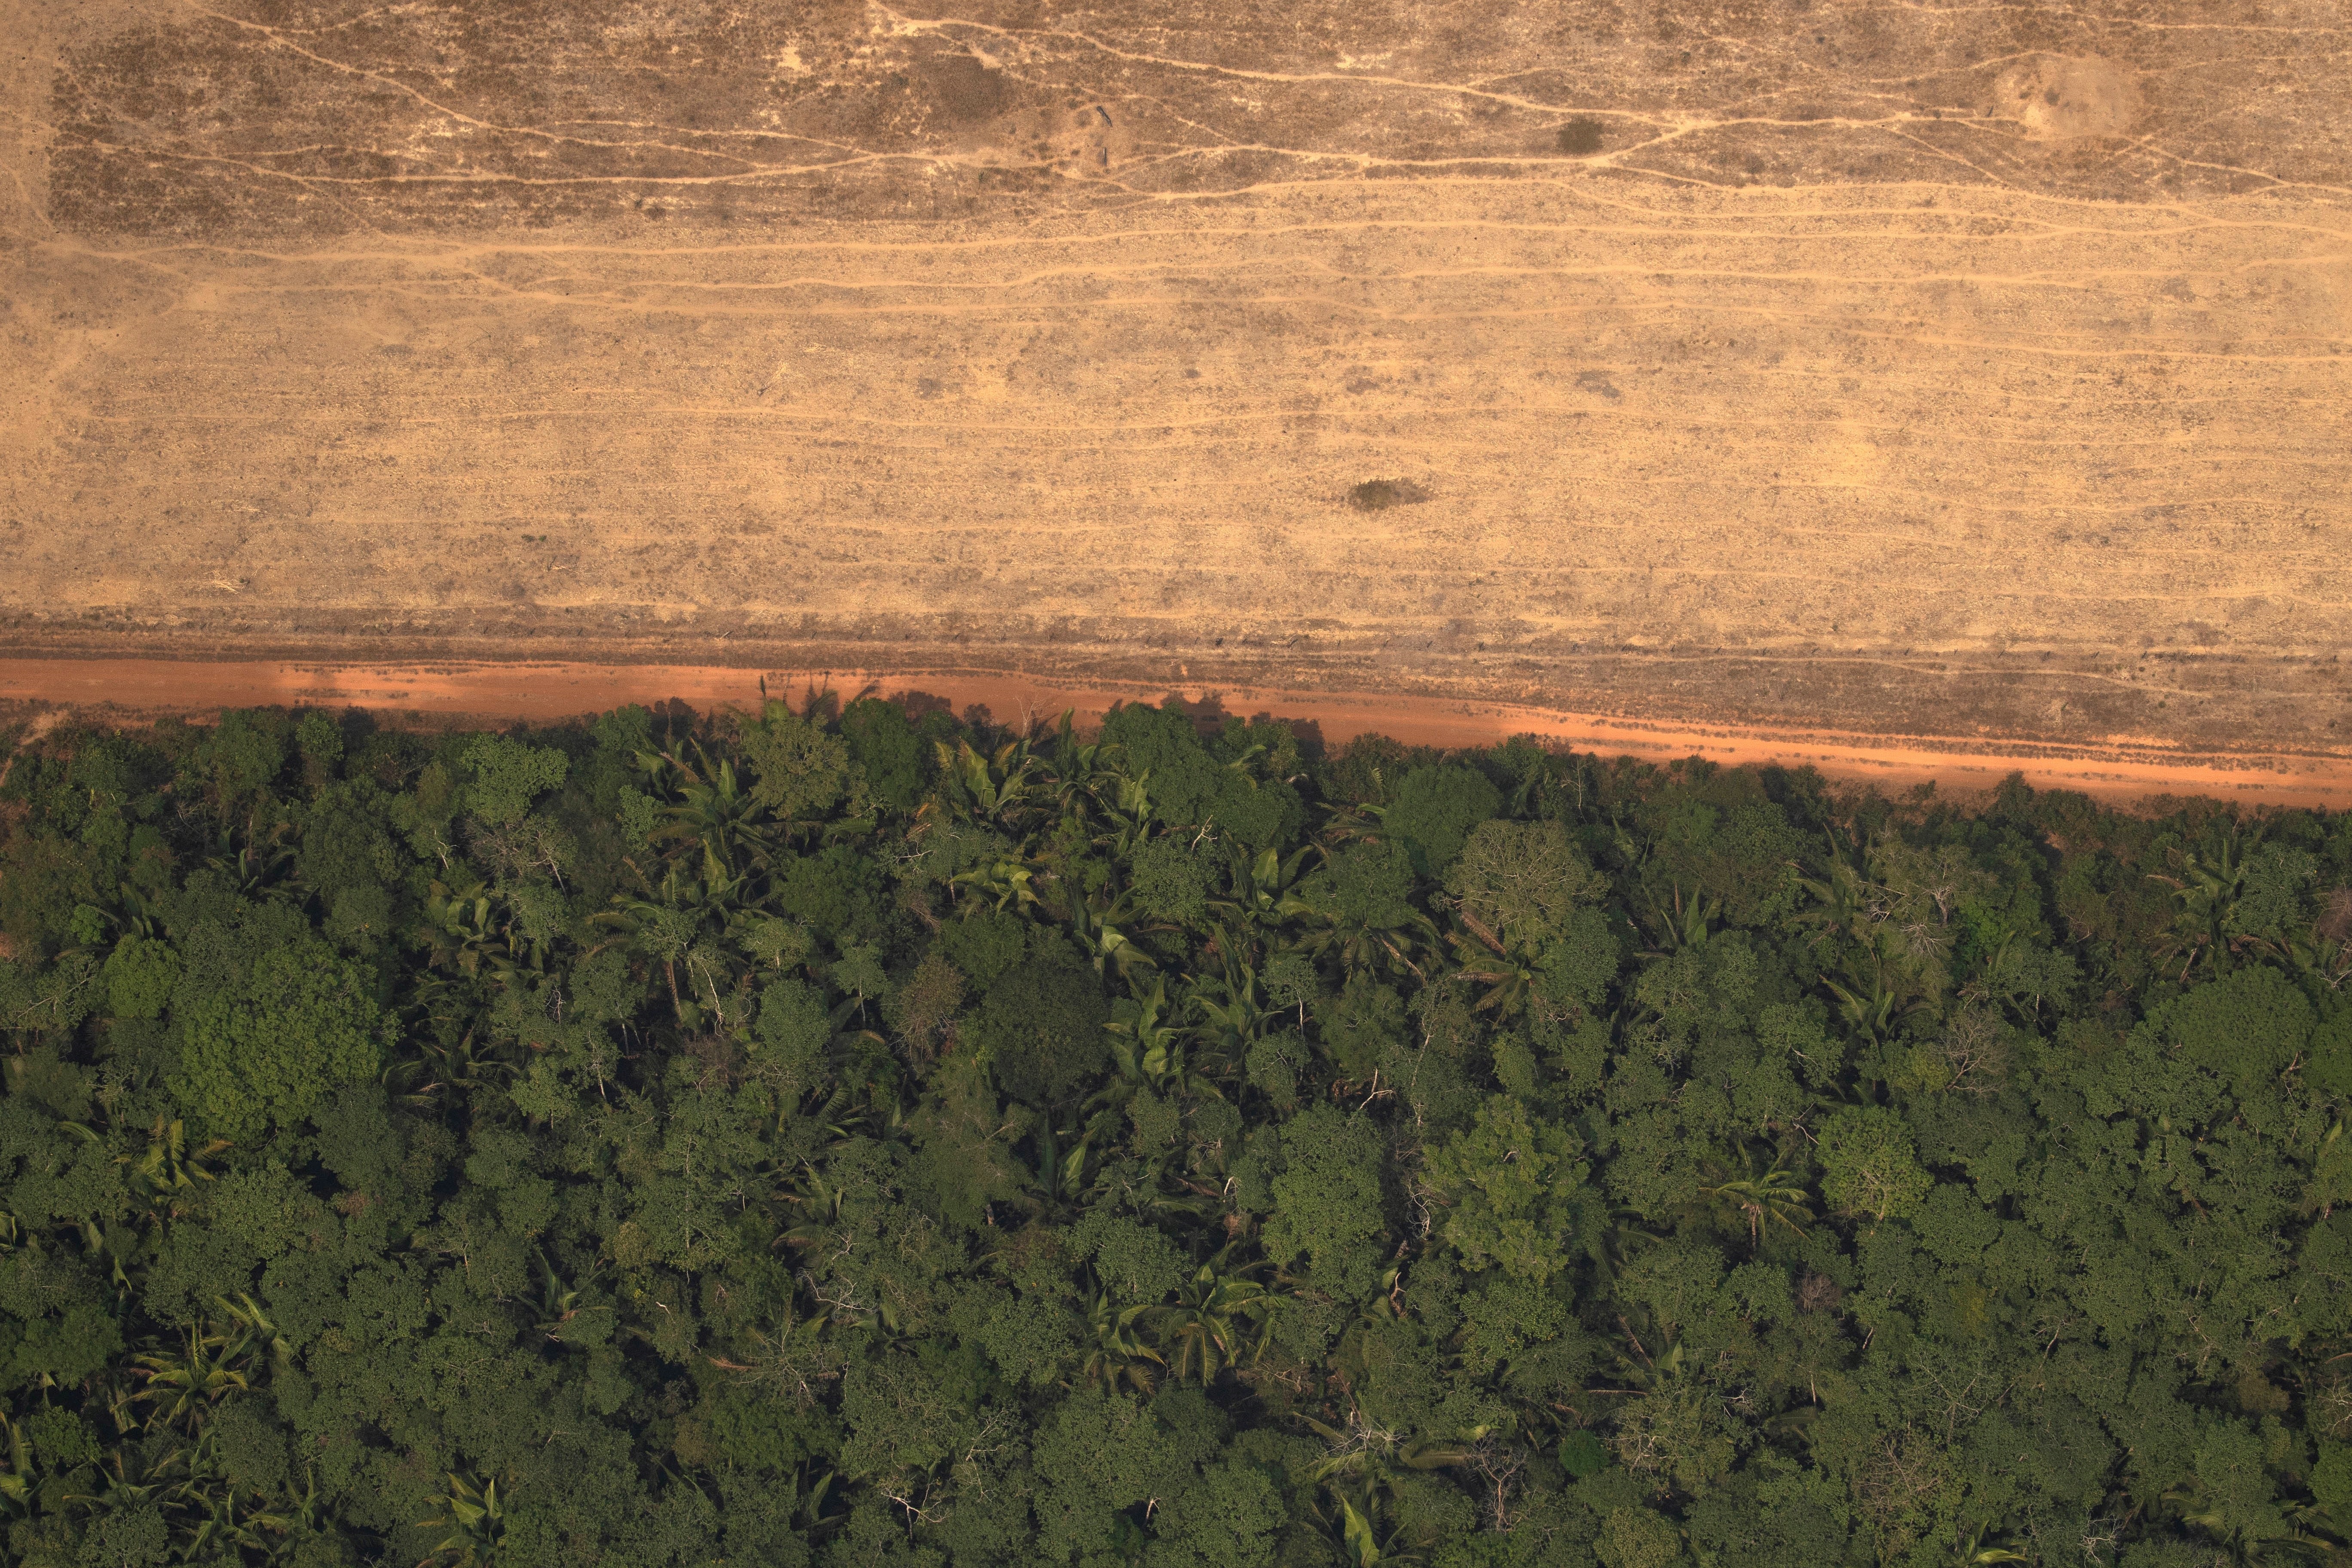 Brasil - Los humedales del Pantanal sufrieron un número récord de incendios en julio que continúan a lo largo de agosto, amenazando la notable biodiversidad de la región. La falta de lluvia y las altas temperaturas durante la primera mitad del año probablemente contribuyeron a los incendios